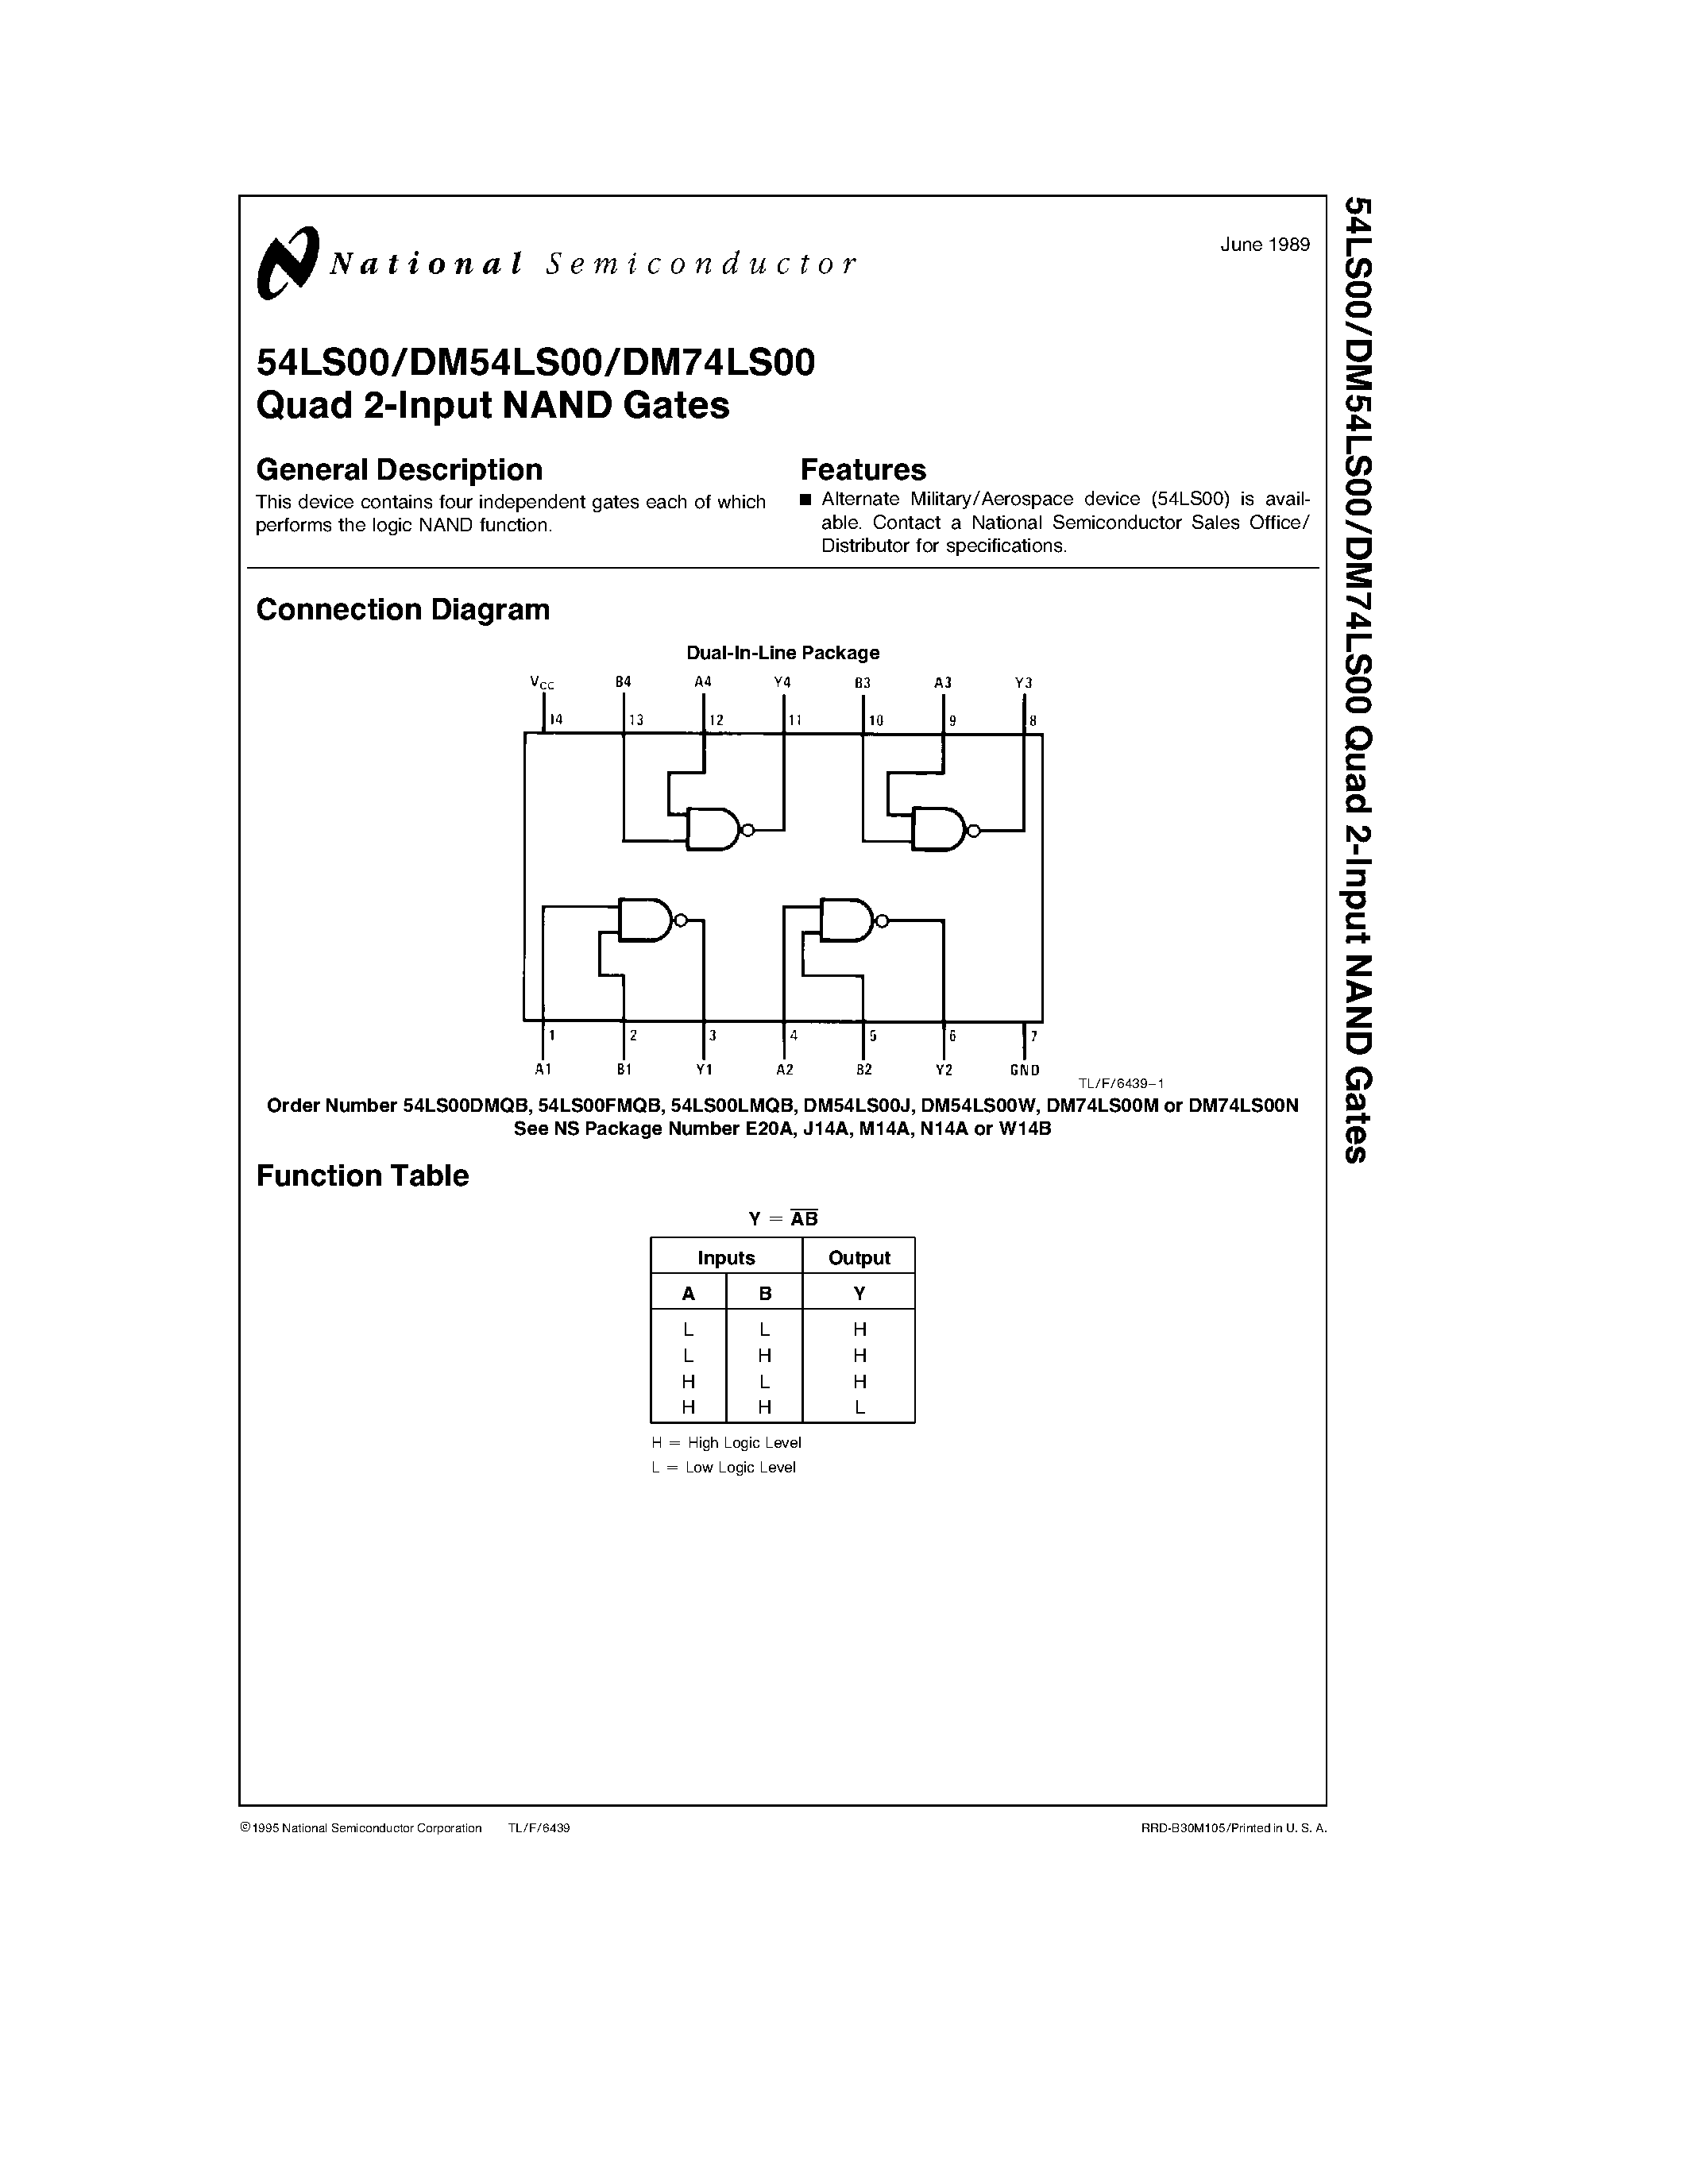 Даташит 54LS00 - Quad 2-Input NAND Gates страница 1